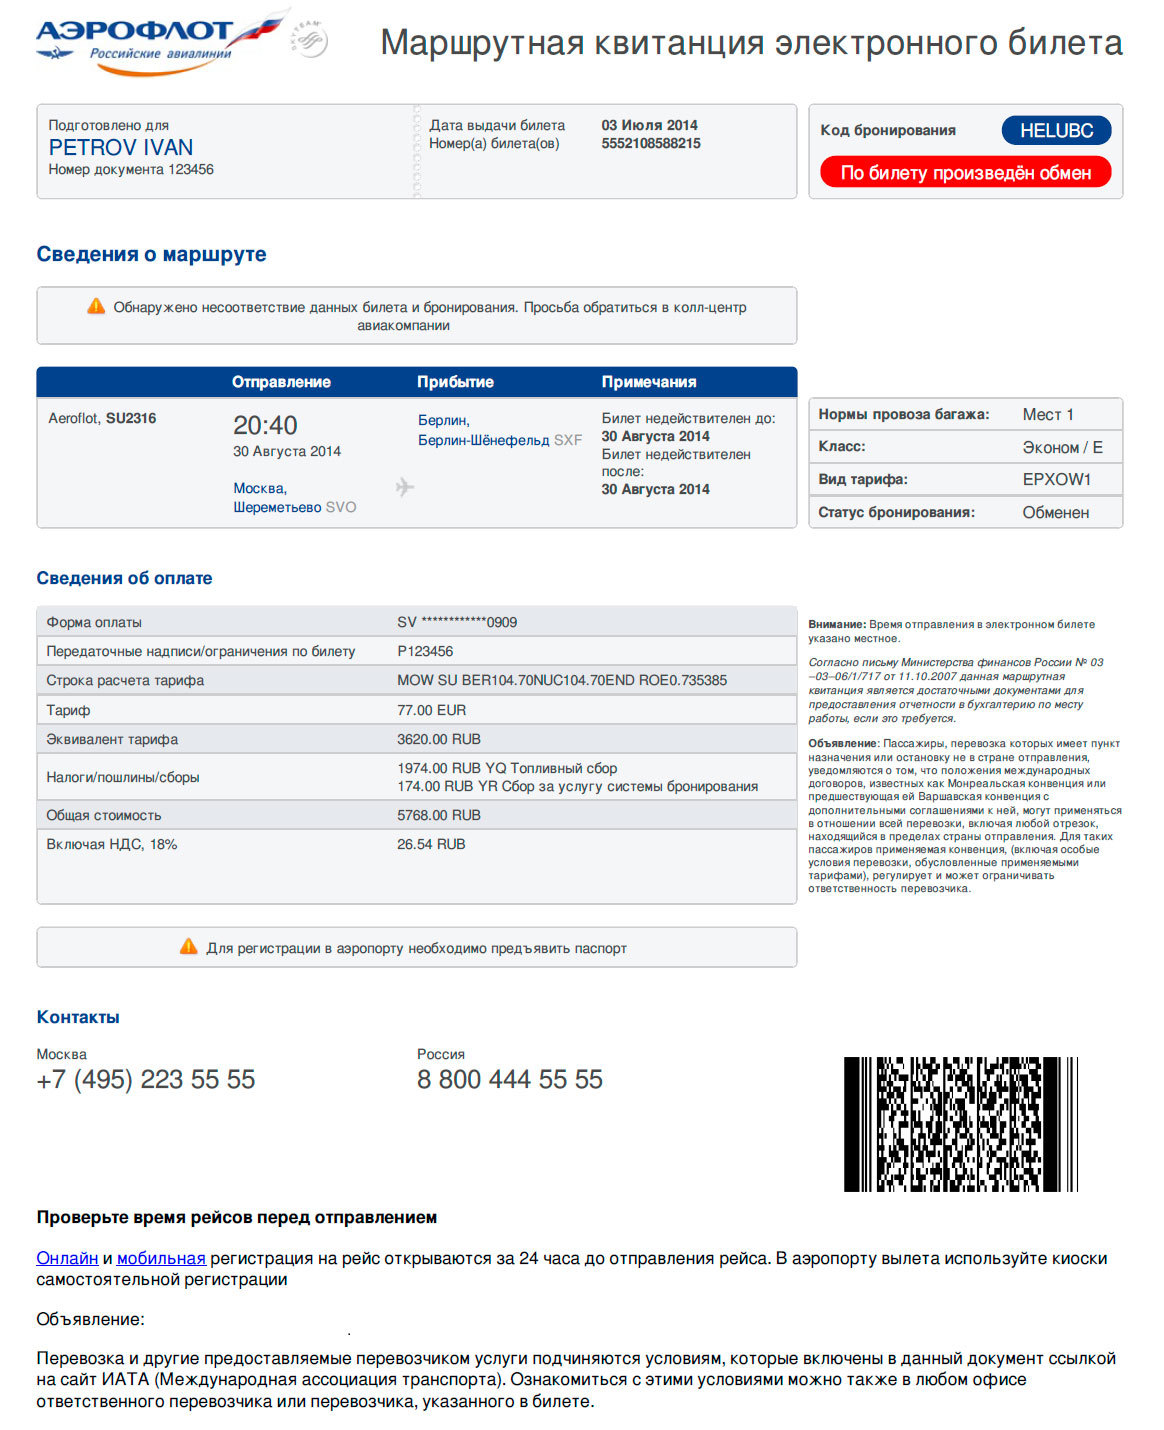 Можно сдать билет на самолет аэрофлот. Как выглядит электронный билет на самолет. Как выглядит маршрутная квитанция электронного билета на самолет. Как выглядит распечатка электронного билета на самолет. Маршрутная квитанция электронного билета Аэрофлот 2022.